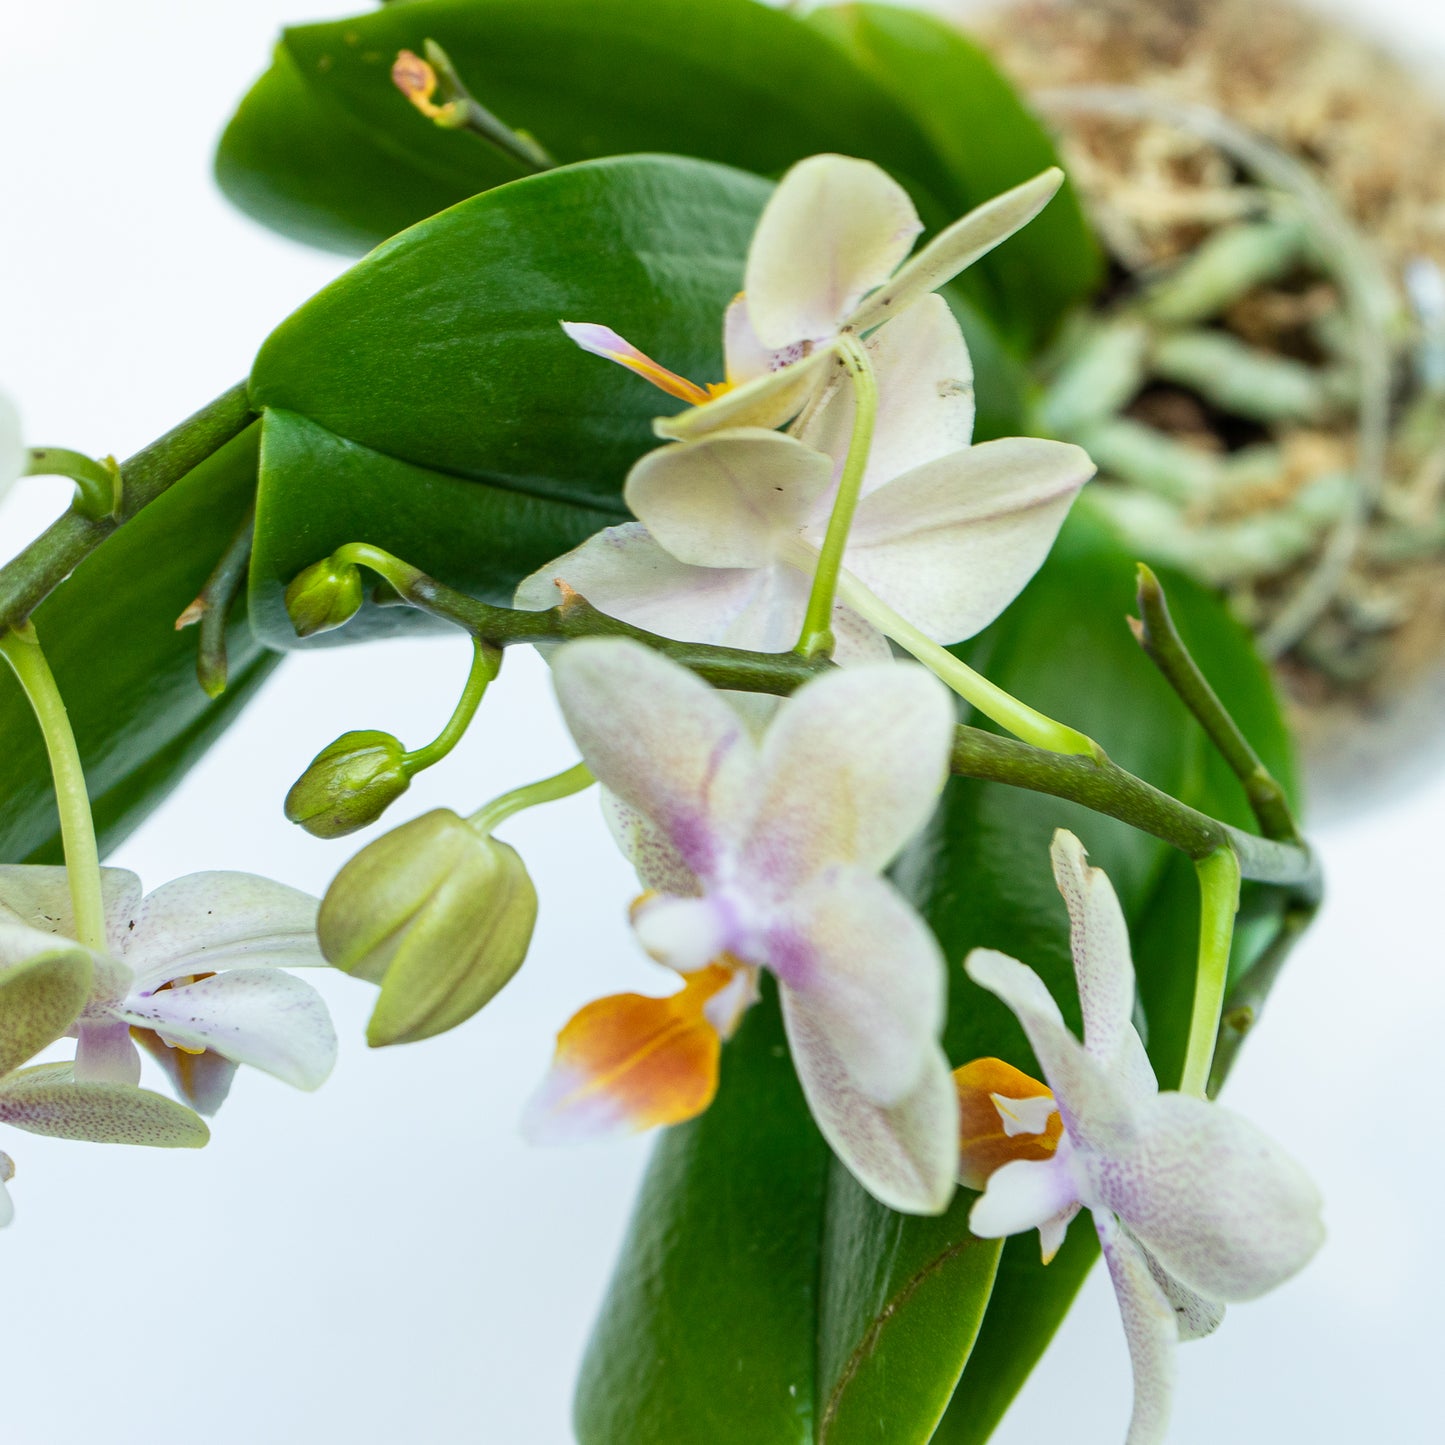 Subitoids Orchidea | Sfera con Pianta Pronta da Appendere - hoh.green - Ortisgreen